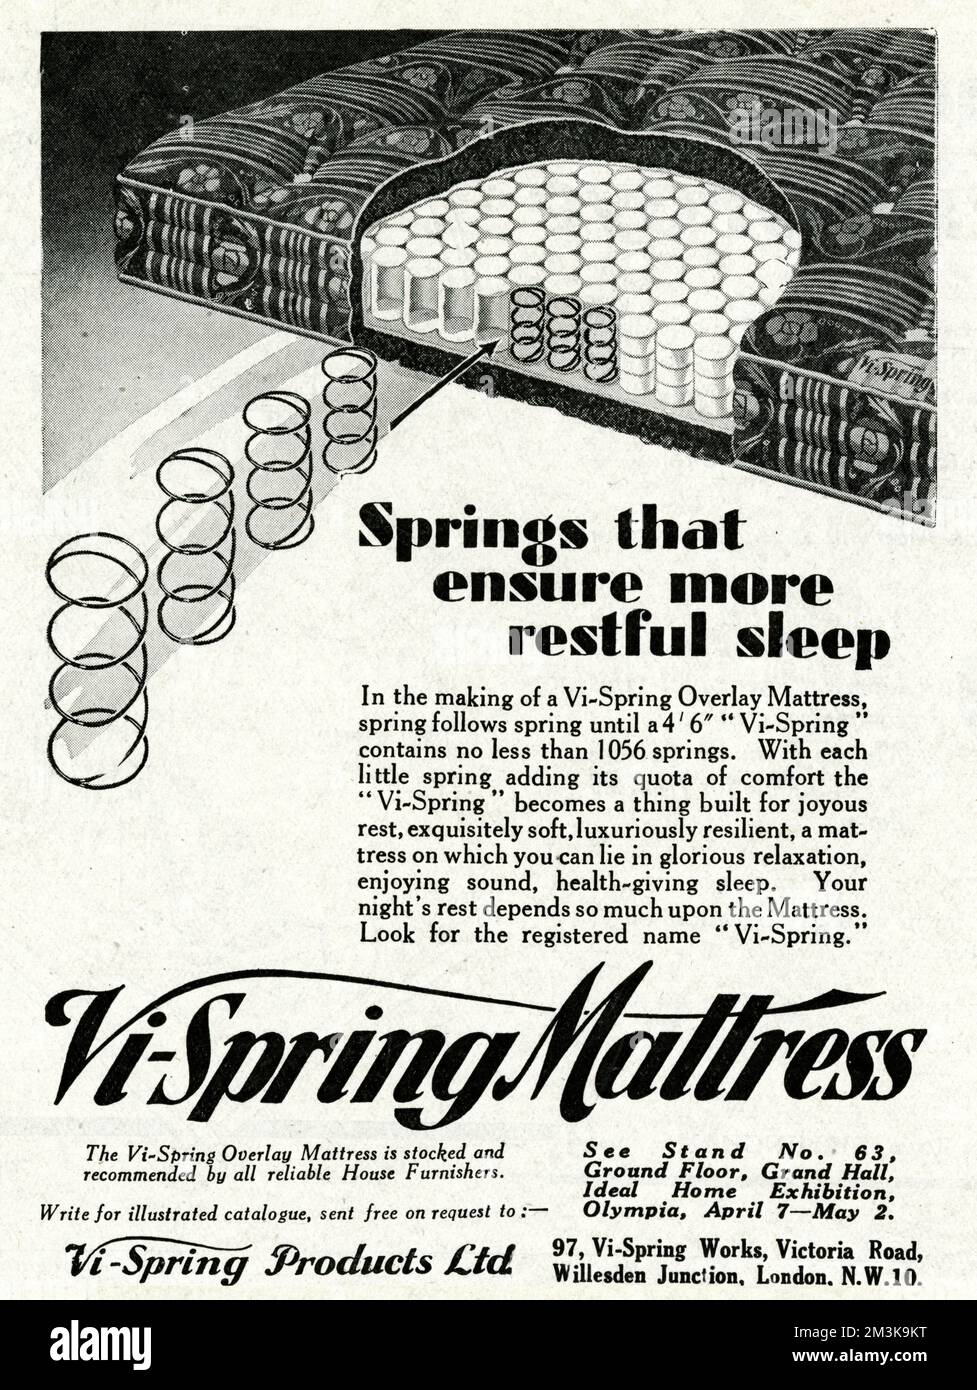 Negli anni '1930s il materasso Innerspring viene ampiamente utilizzato. "Primavera che assicura un sonno più riposante". Nella realizzazione di un materassino di copertura VI-Spring, la molla segue la molla fino a quando una 'VI-Spring' da 4' 6" non contiene meno di 1056 molle. Con ogni piccola primavera che aggiunge la sua quota di comfort, la 'VI-Spring' diventa una cosa costruita per il riposo gioioso, squisitamente morbido, lussuosamente resiliente, un materasso su cui si può sdraiarsi in glorioso relax, godendo il suono, il benessere del sonno. Il riposo della notte dipende tanto dal materasso. Data: 1931 Foto Stock